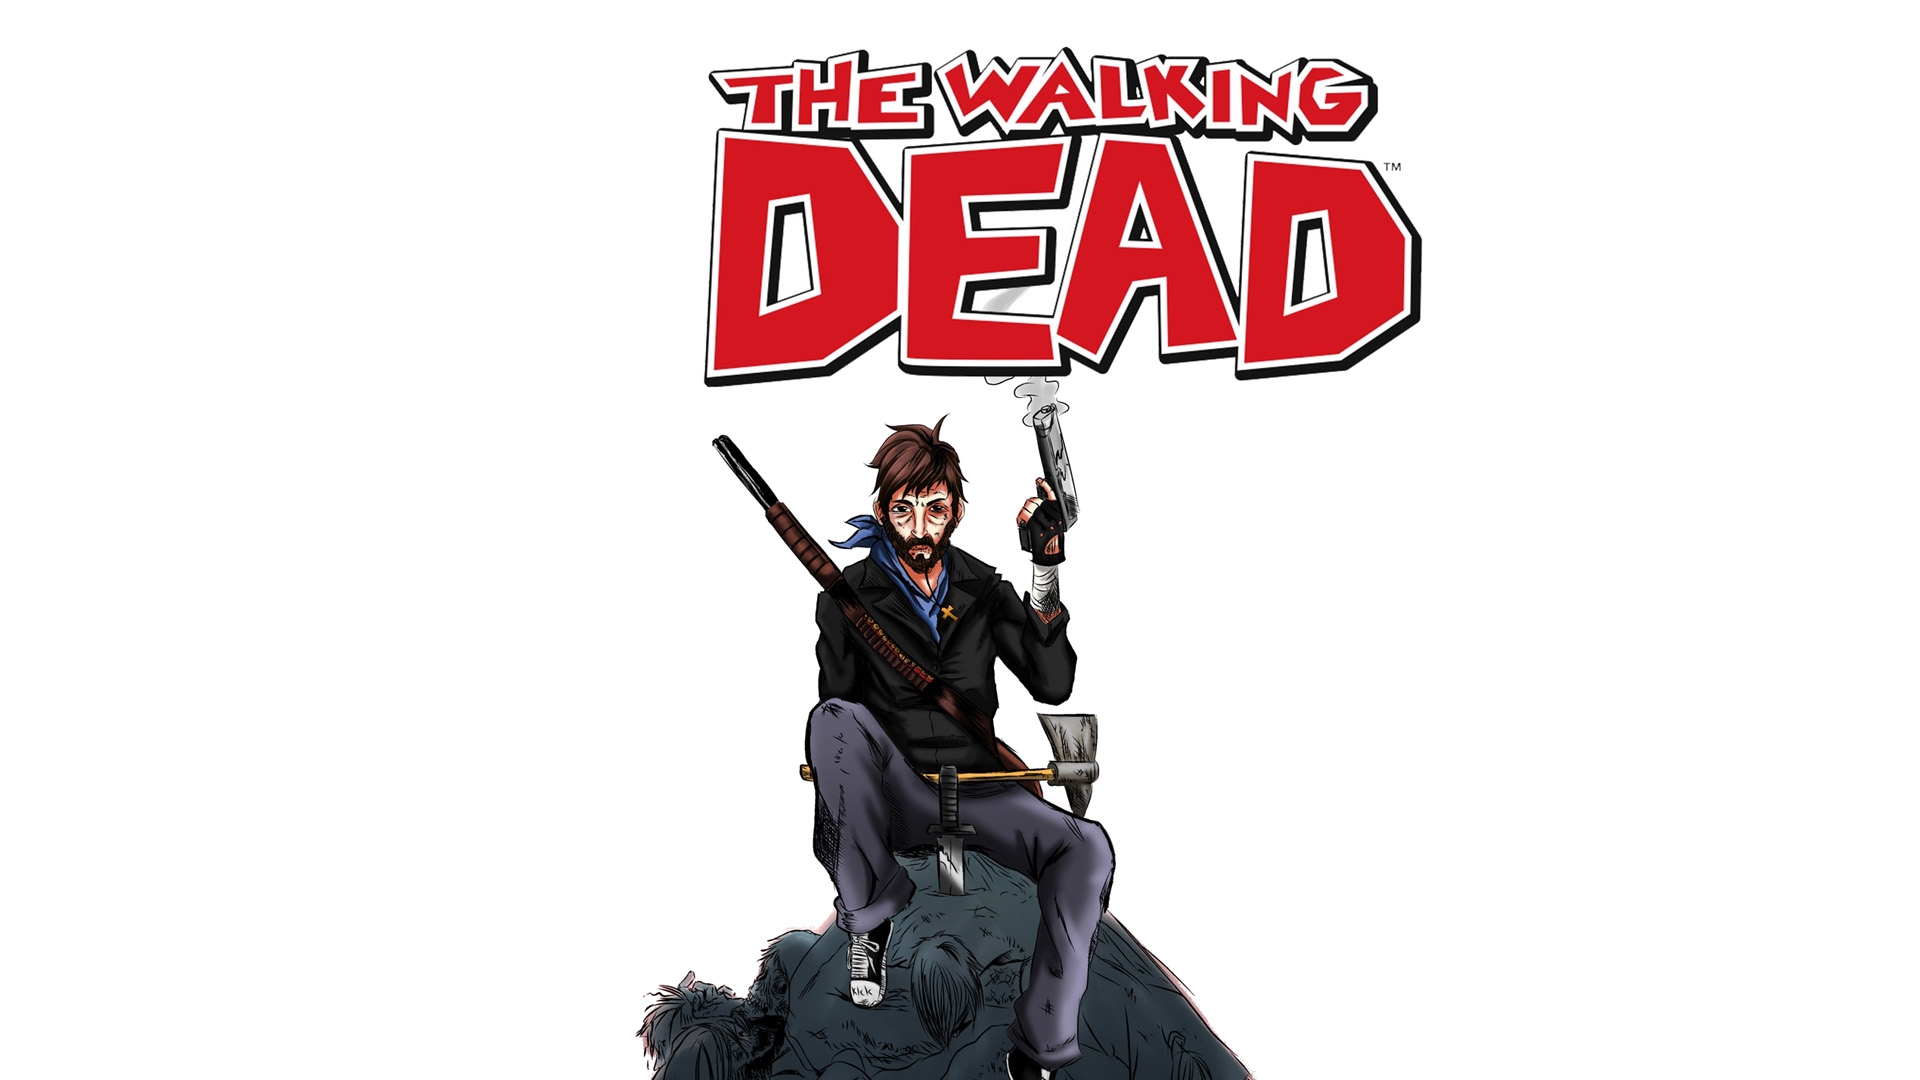 Descarga gratuita de fondo de pantalla para móvil de Historietas, The Walking Dead.